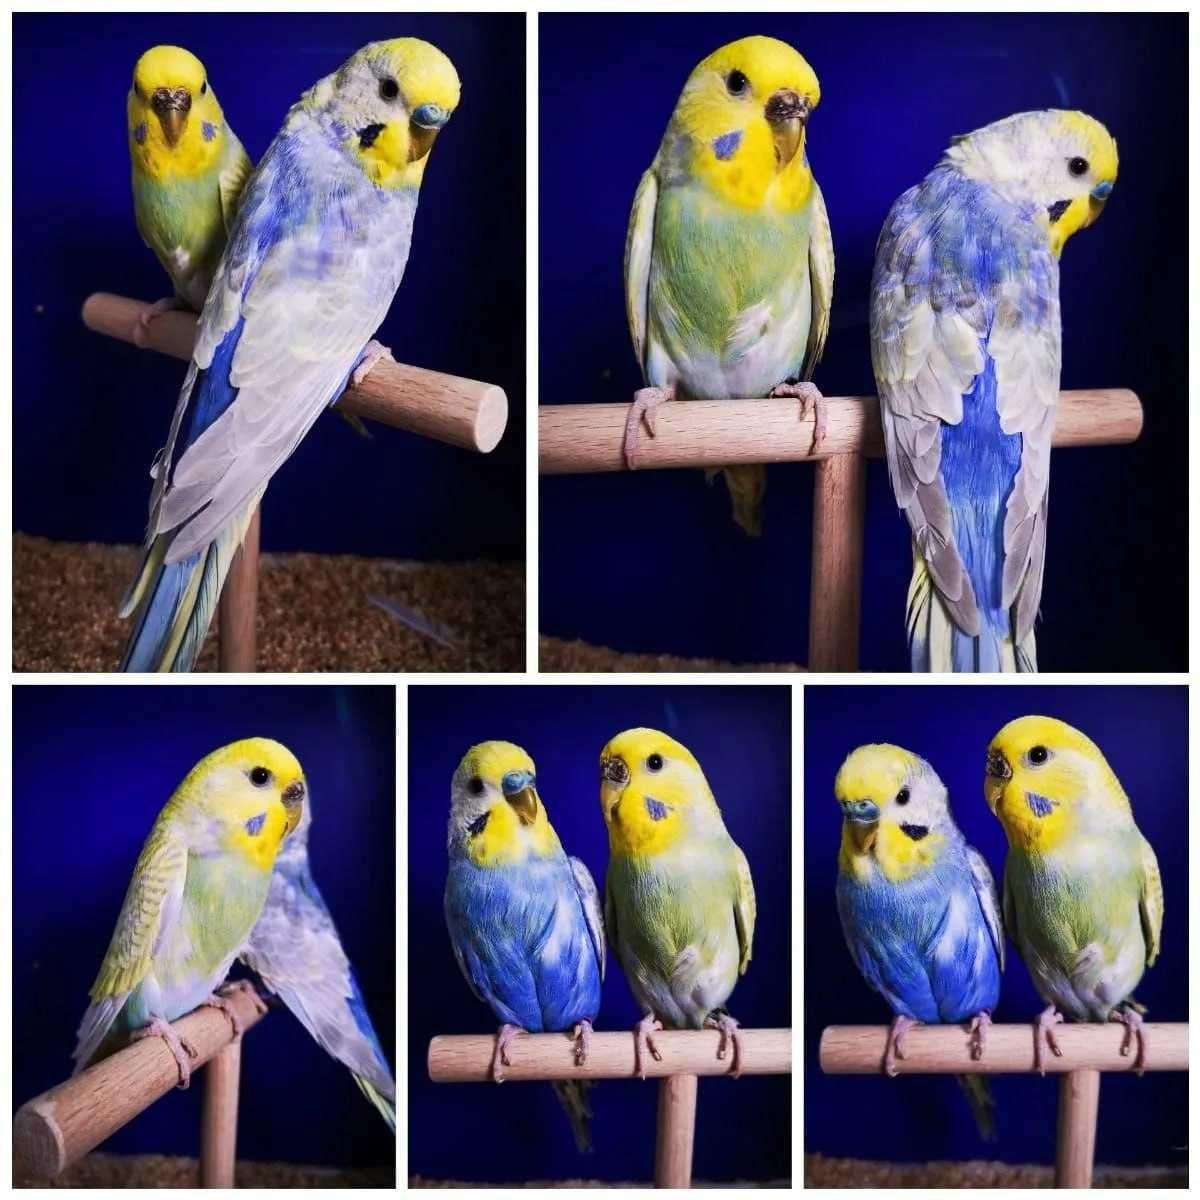 Цветная компания - Волнистые попугаи для вашей семьи